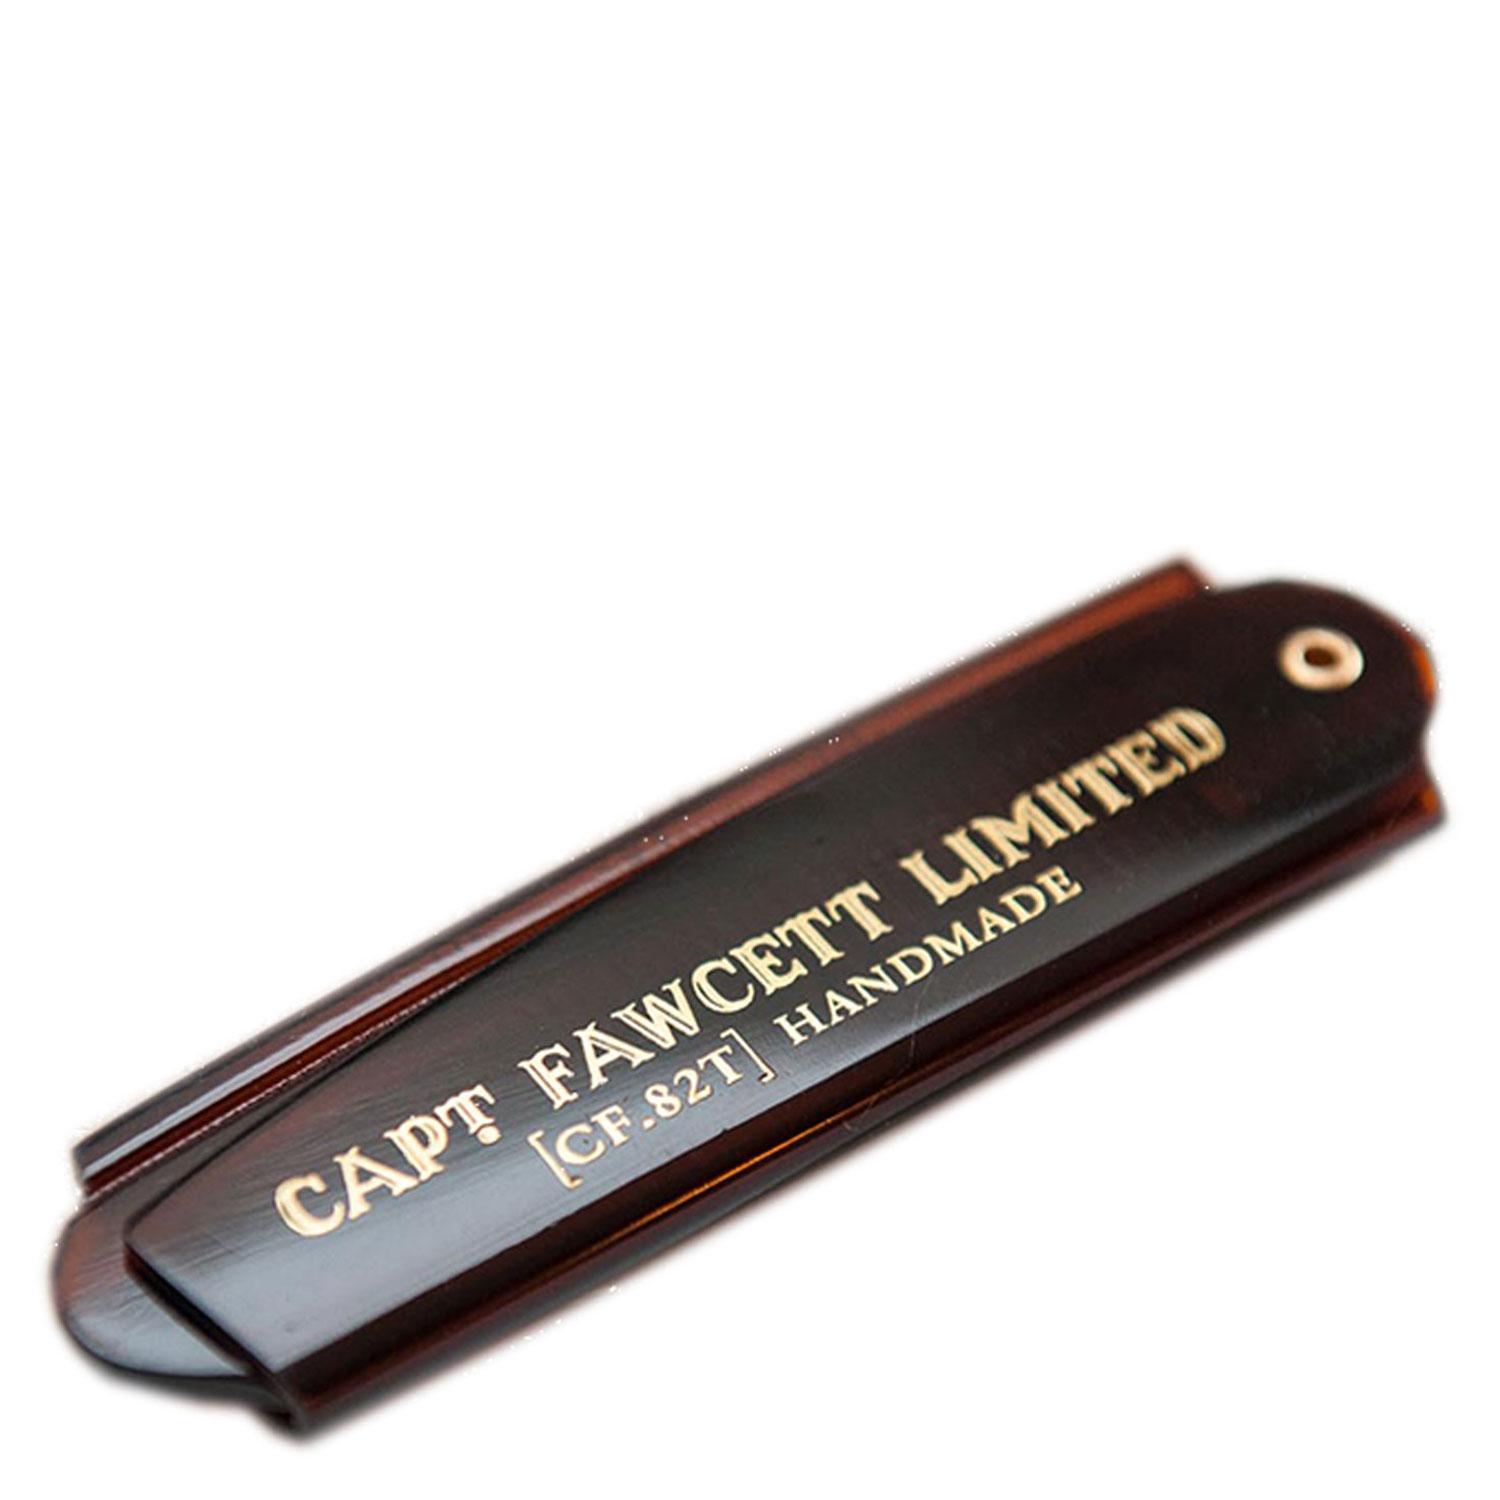 Capt. Fawcett Tools - Folding Pocket Beard Comb